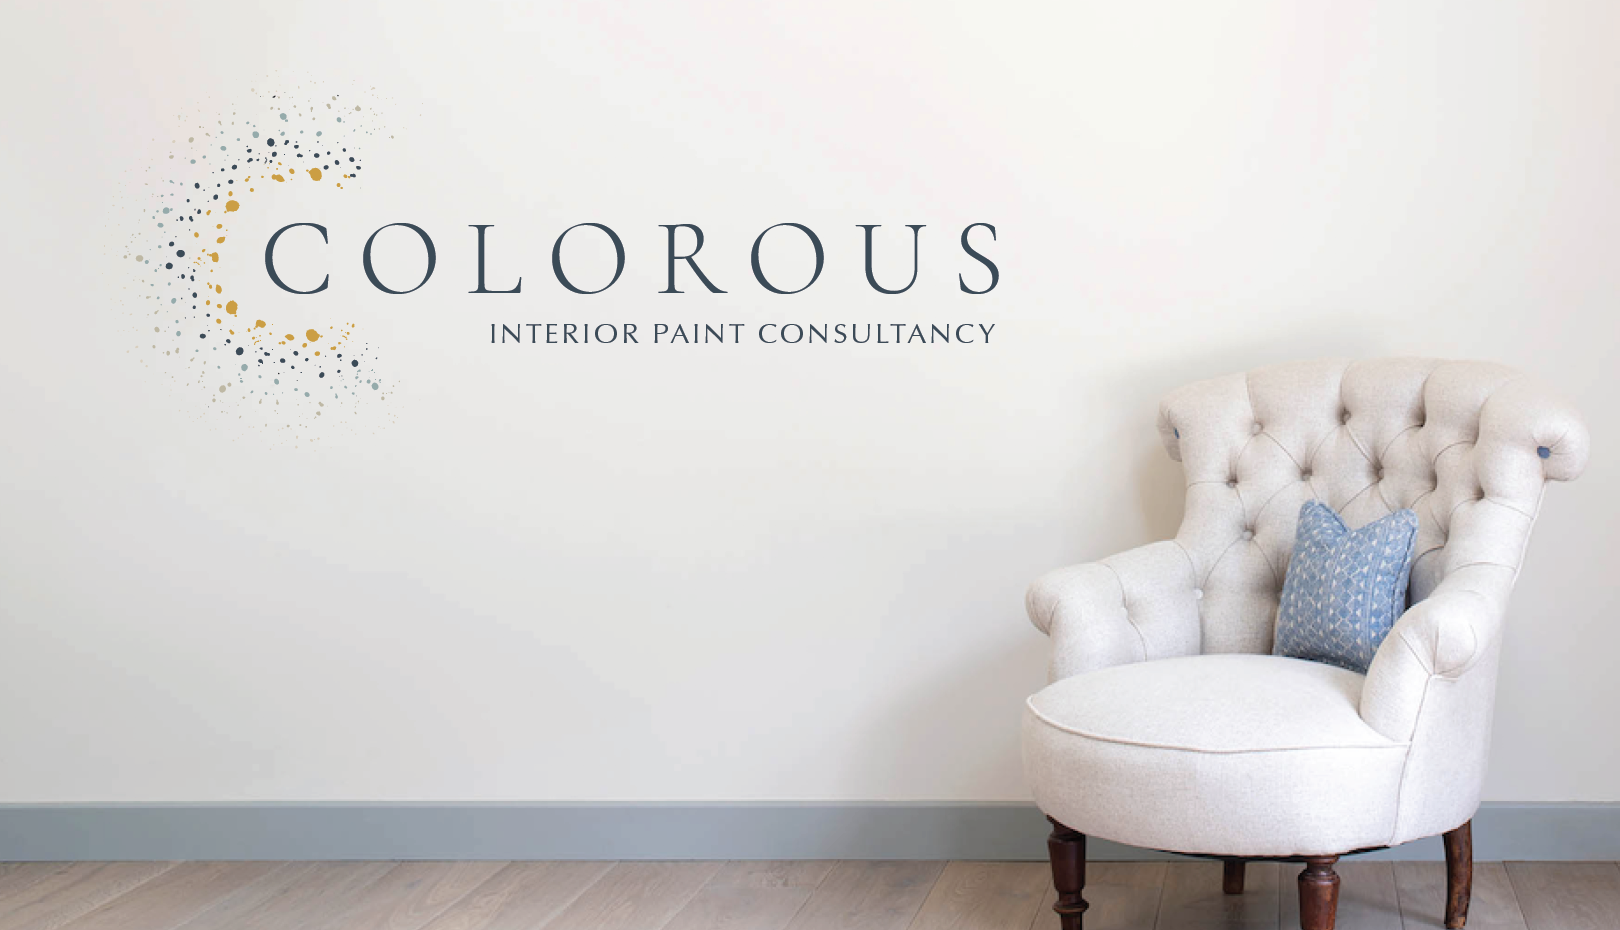 Colorous Paint Consultancy